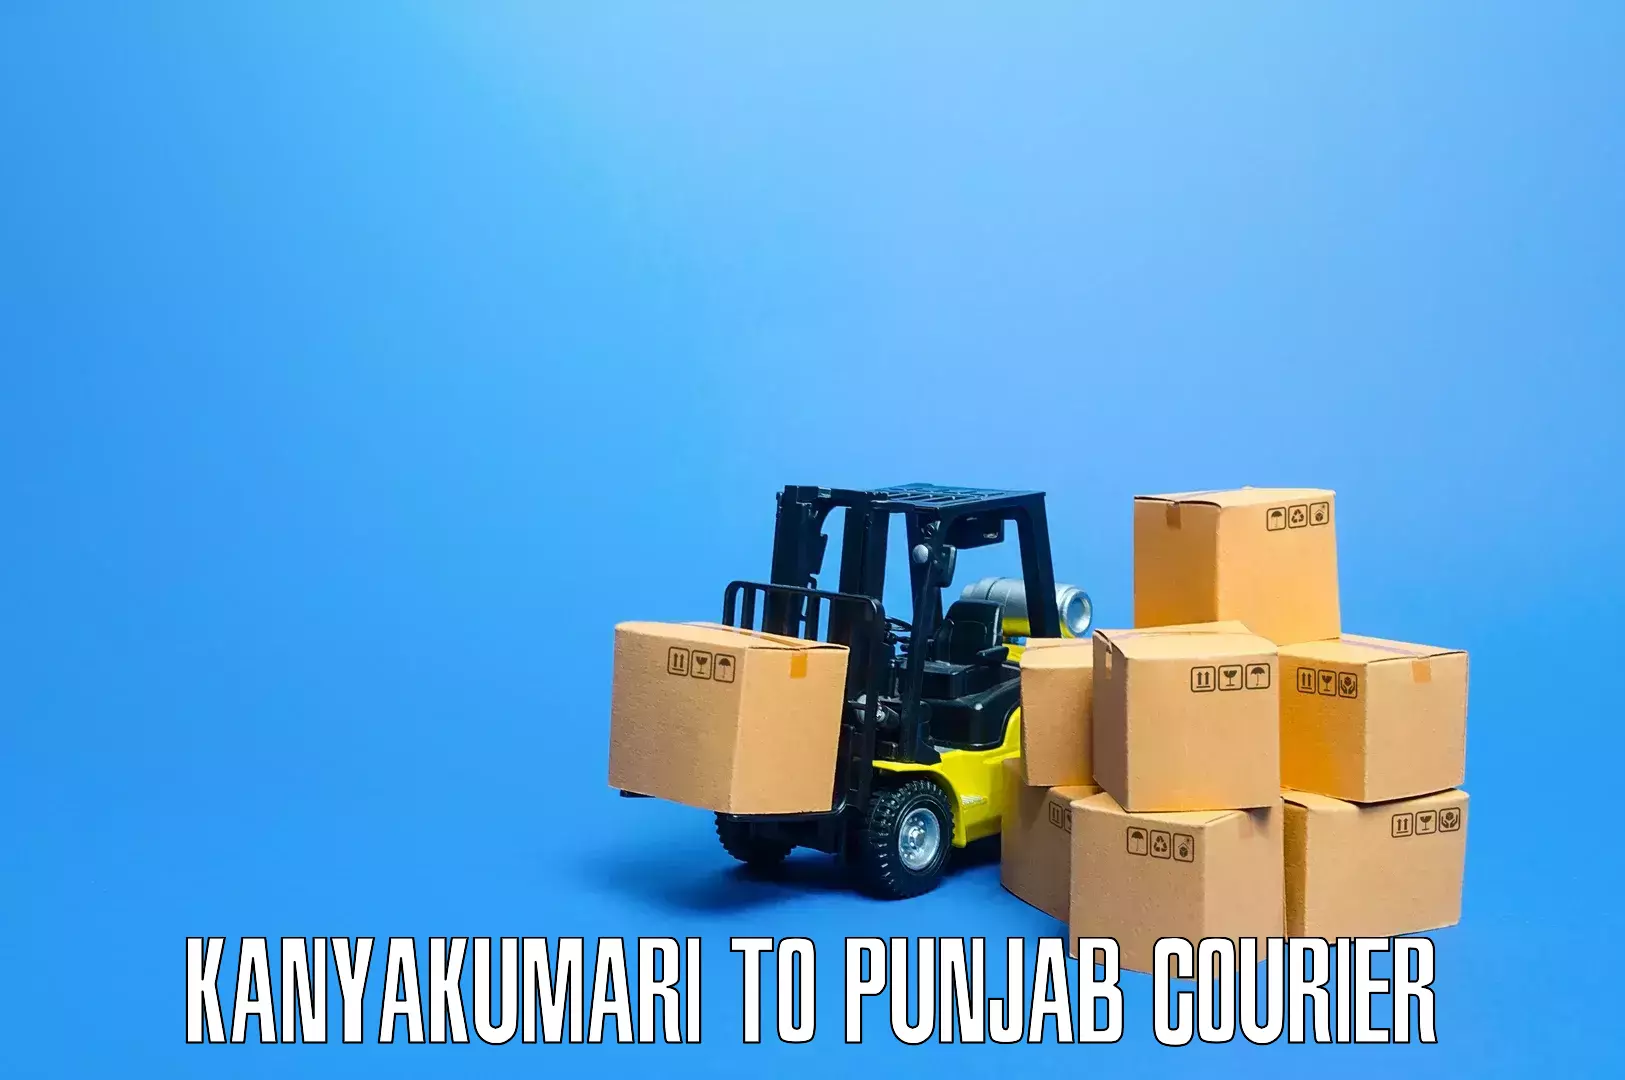 Furniture moving specialists Kanyakumari to Nawanshahr